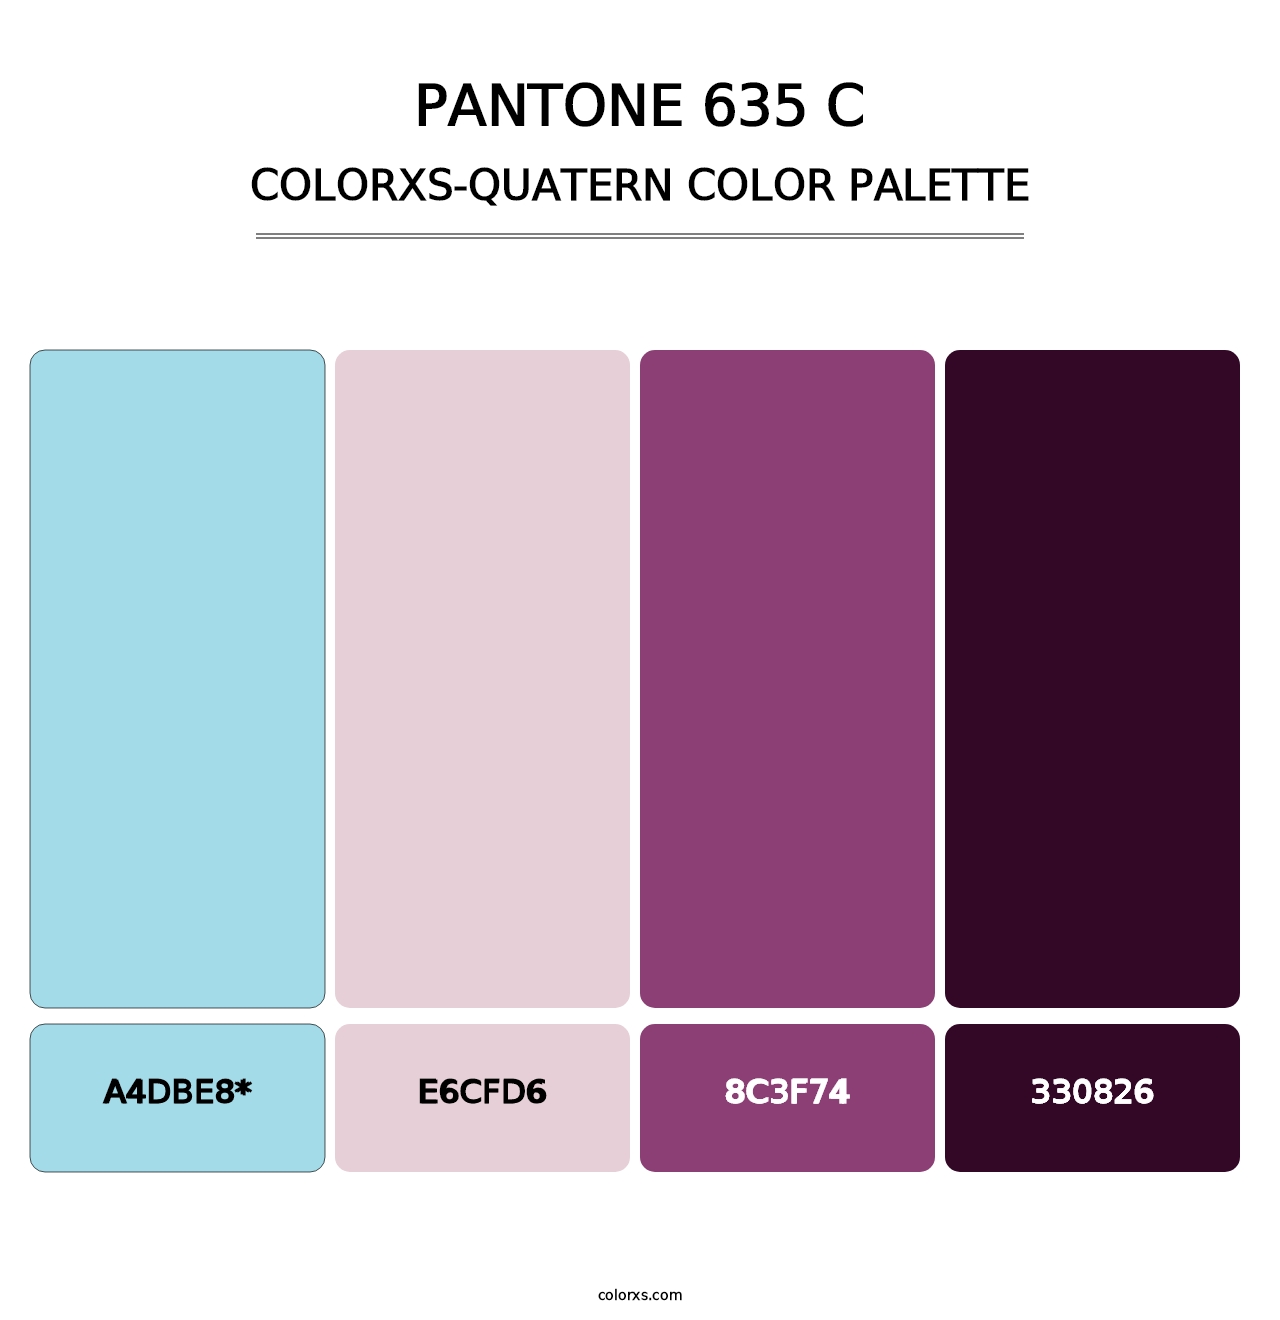 PANTONE 635 C - Colorxs Quatern Palette